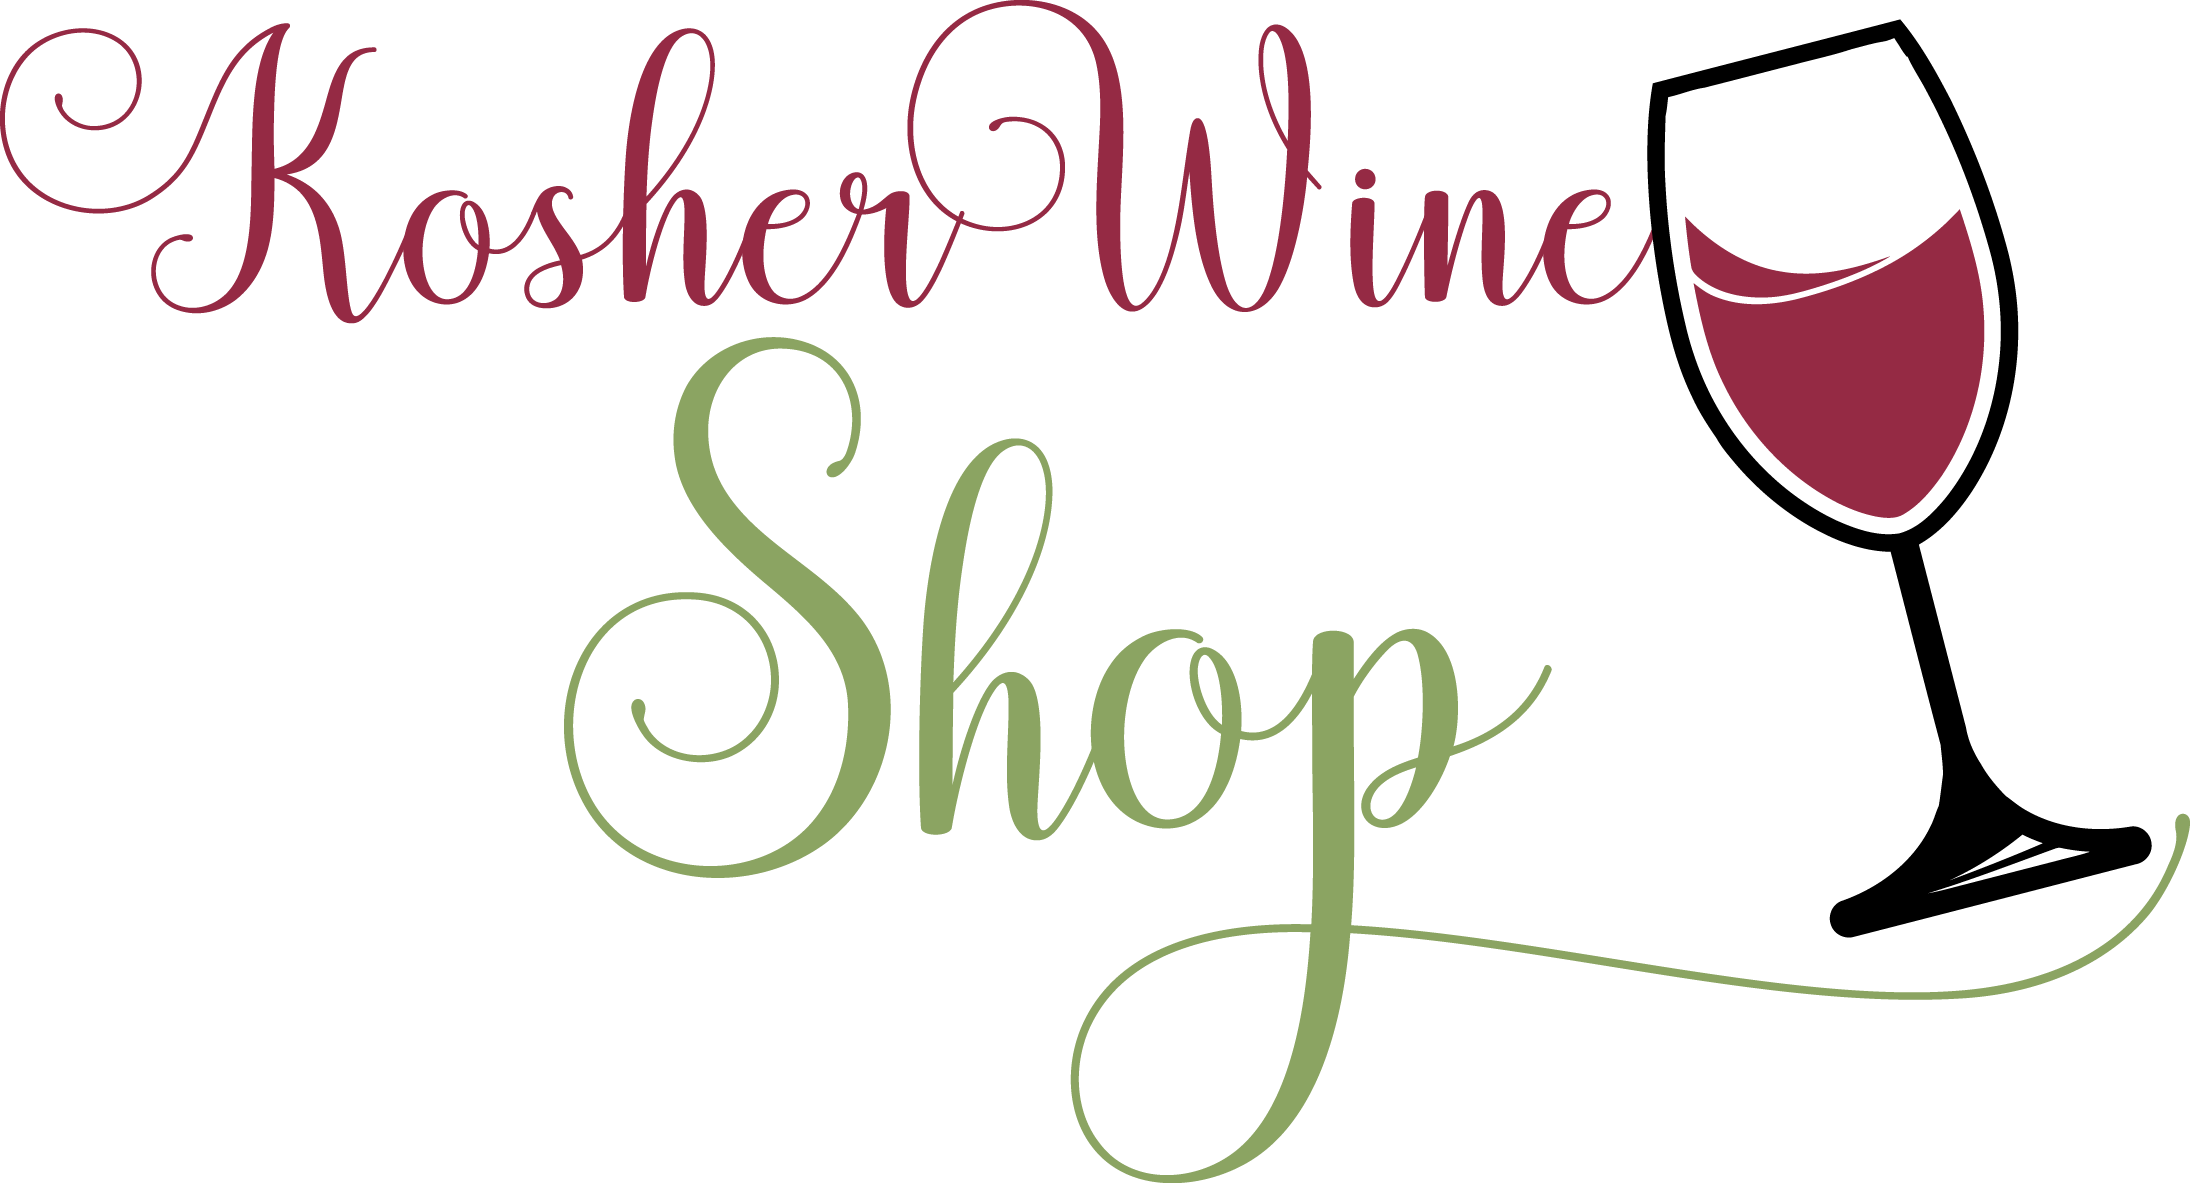   יין כשר, חנות יין, מנוי יין, kosher wine, wine store